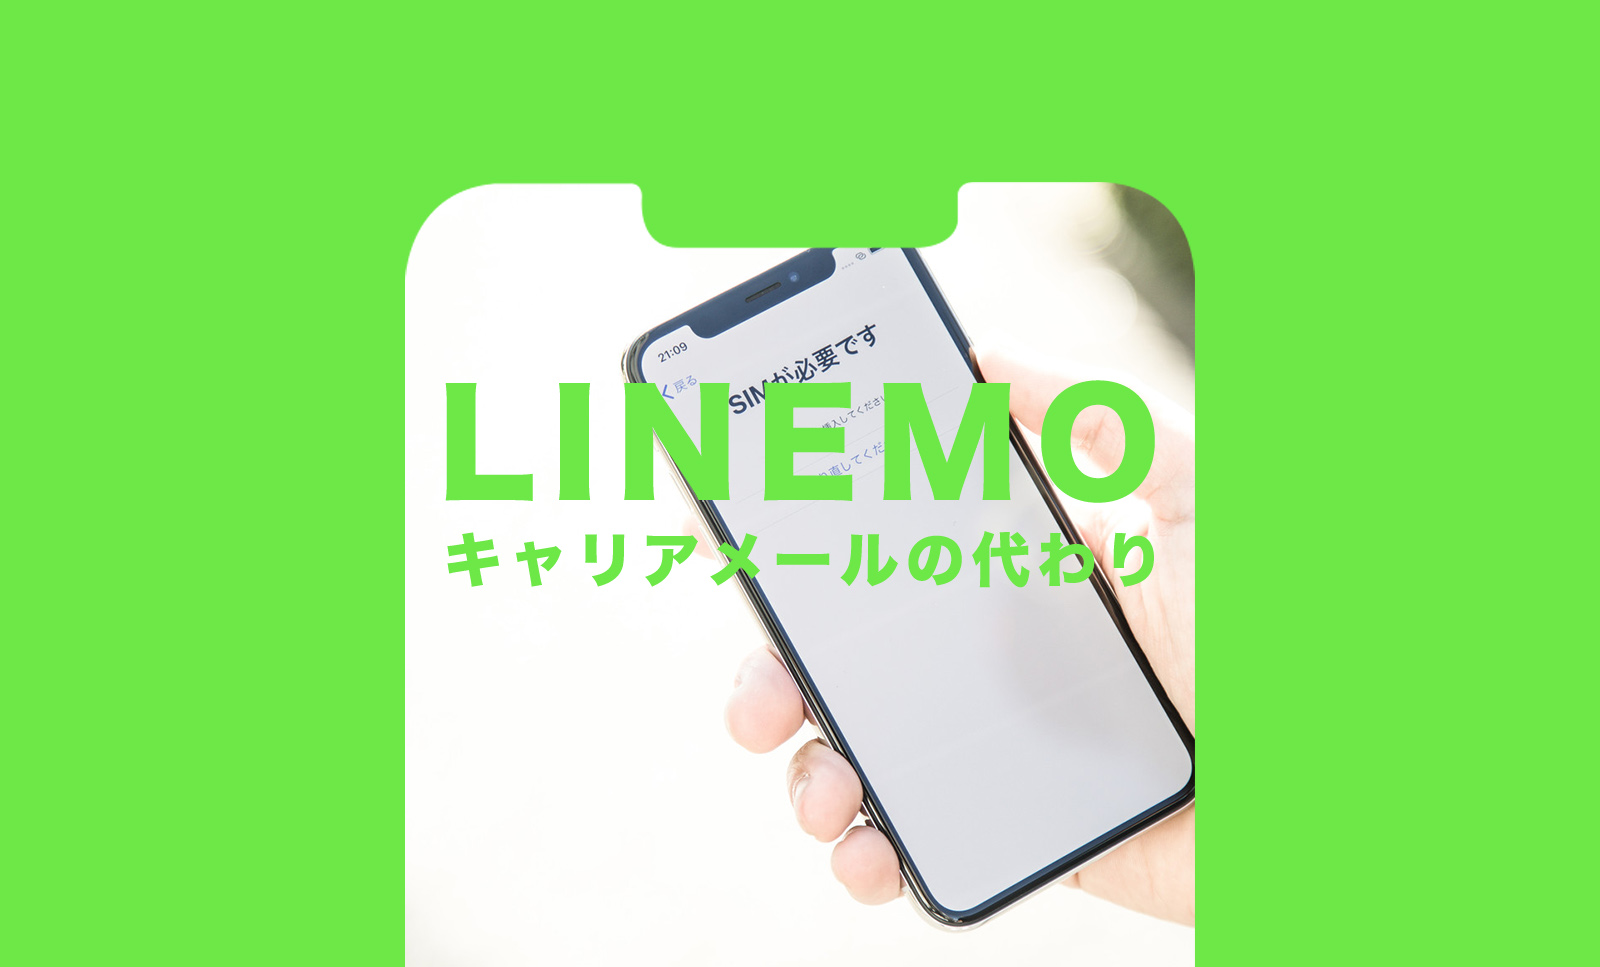 LINEMO(ラインモ)でキャリアメールの代わりのアドレスを解説のサムネイル画像